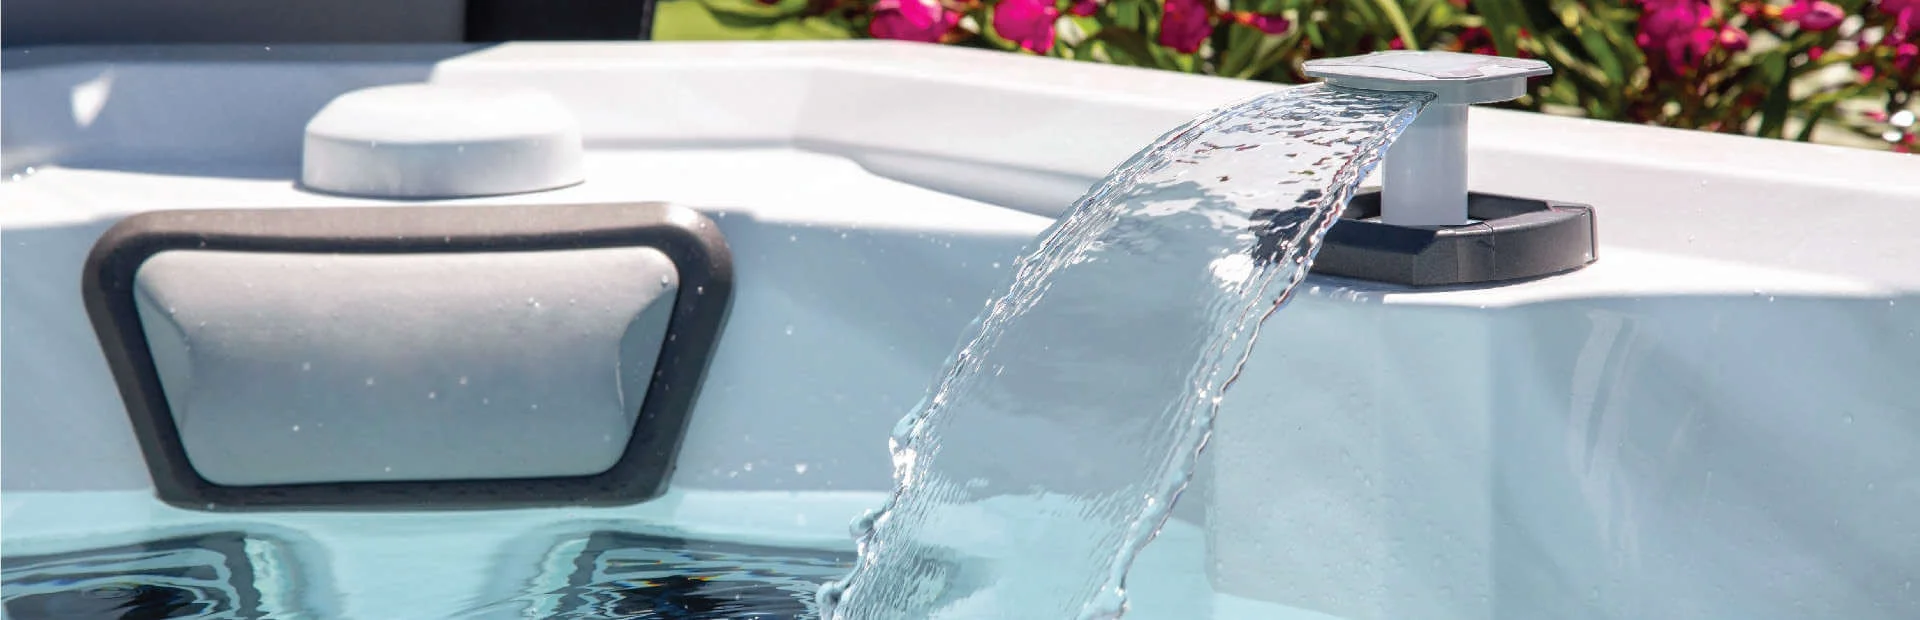 jet spraying water in hot tub